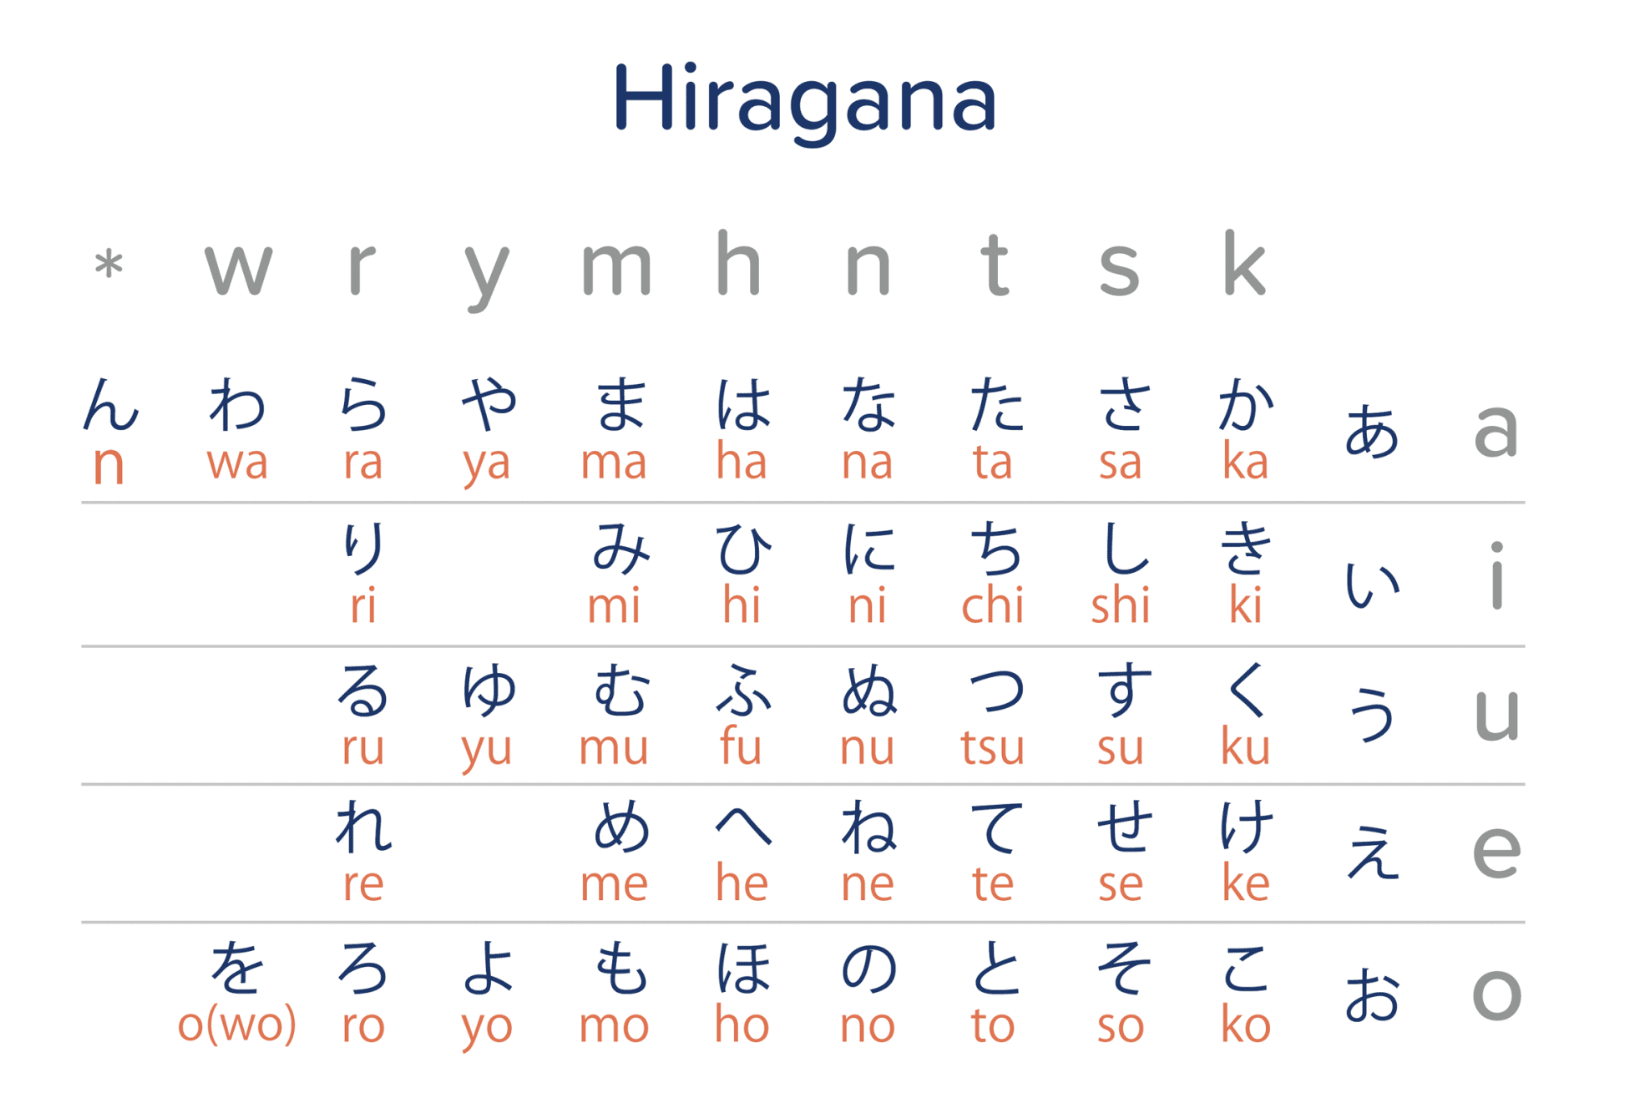 combinaisons langue japonais alphabet japonais prononciation histoire chinoise chine idéogrammes tracé doute usages syllabe caractère côté